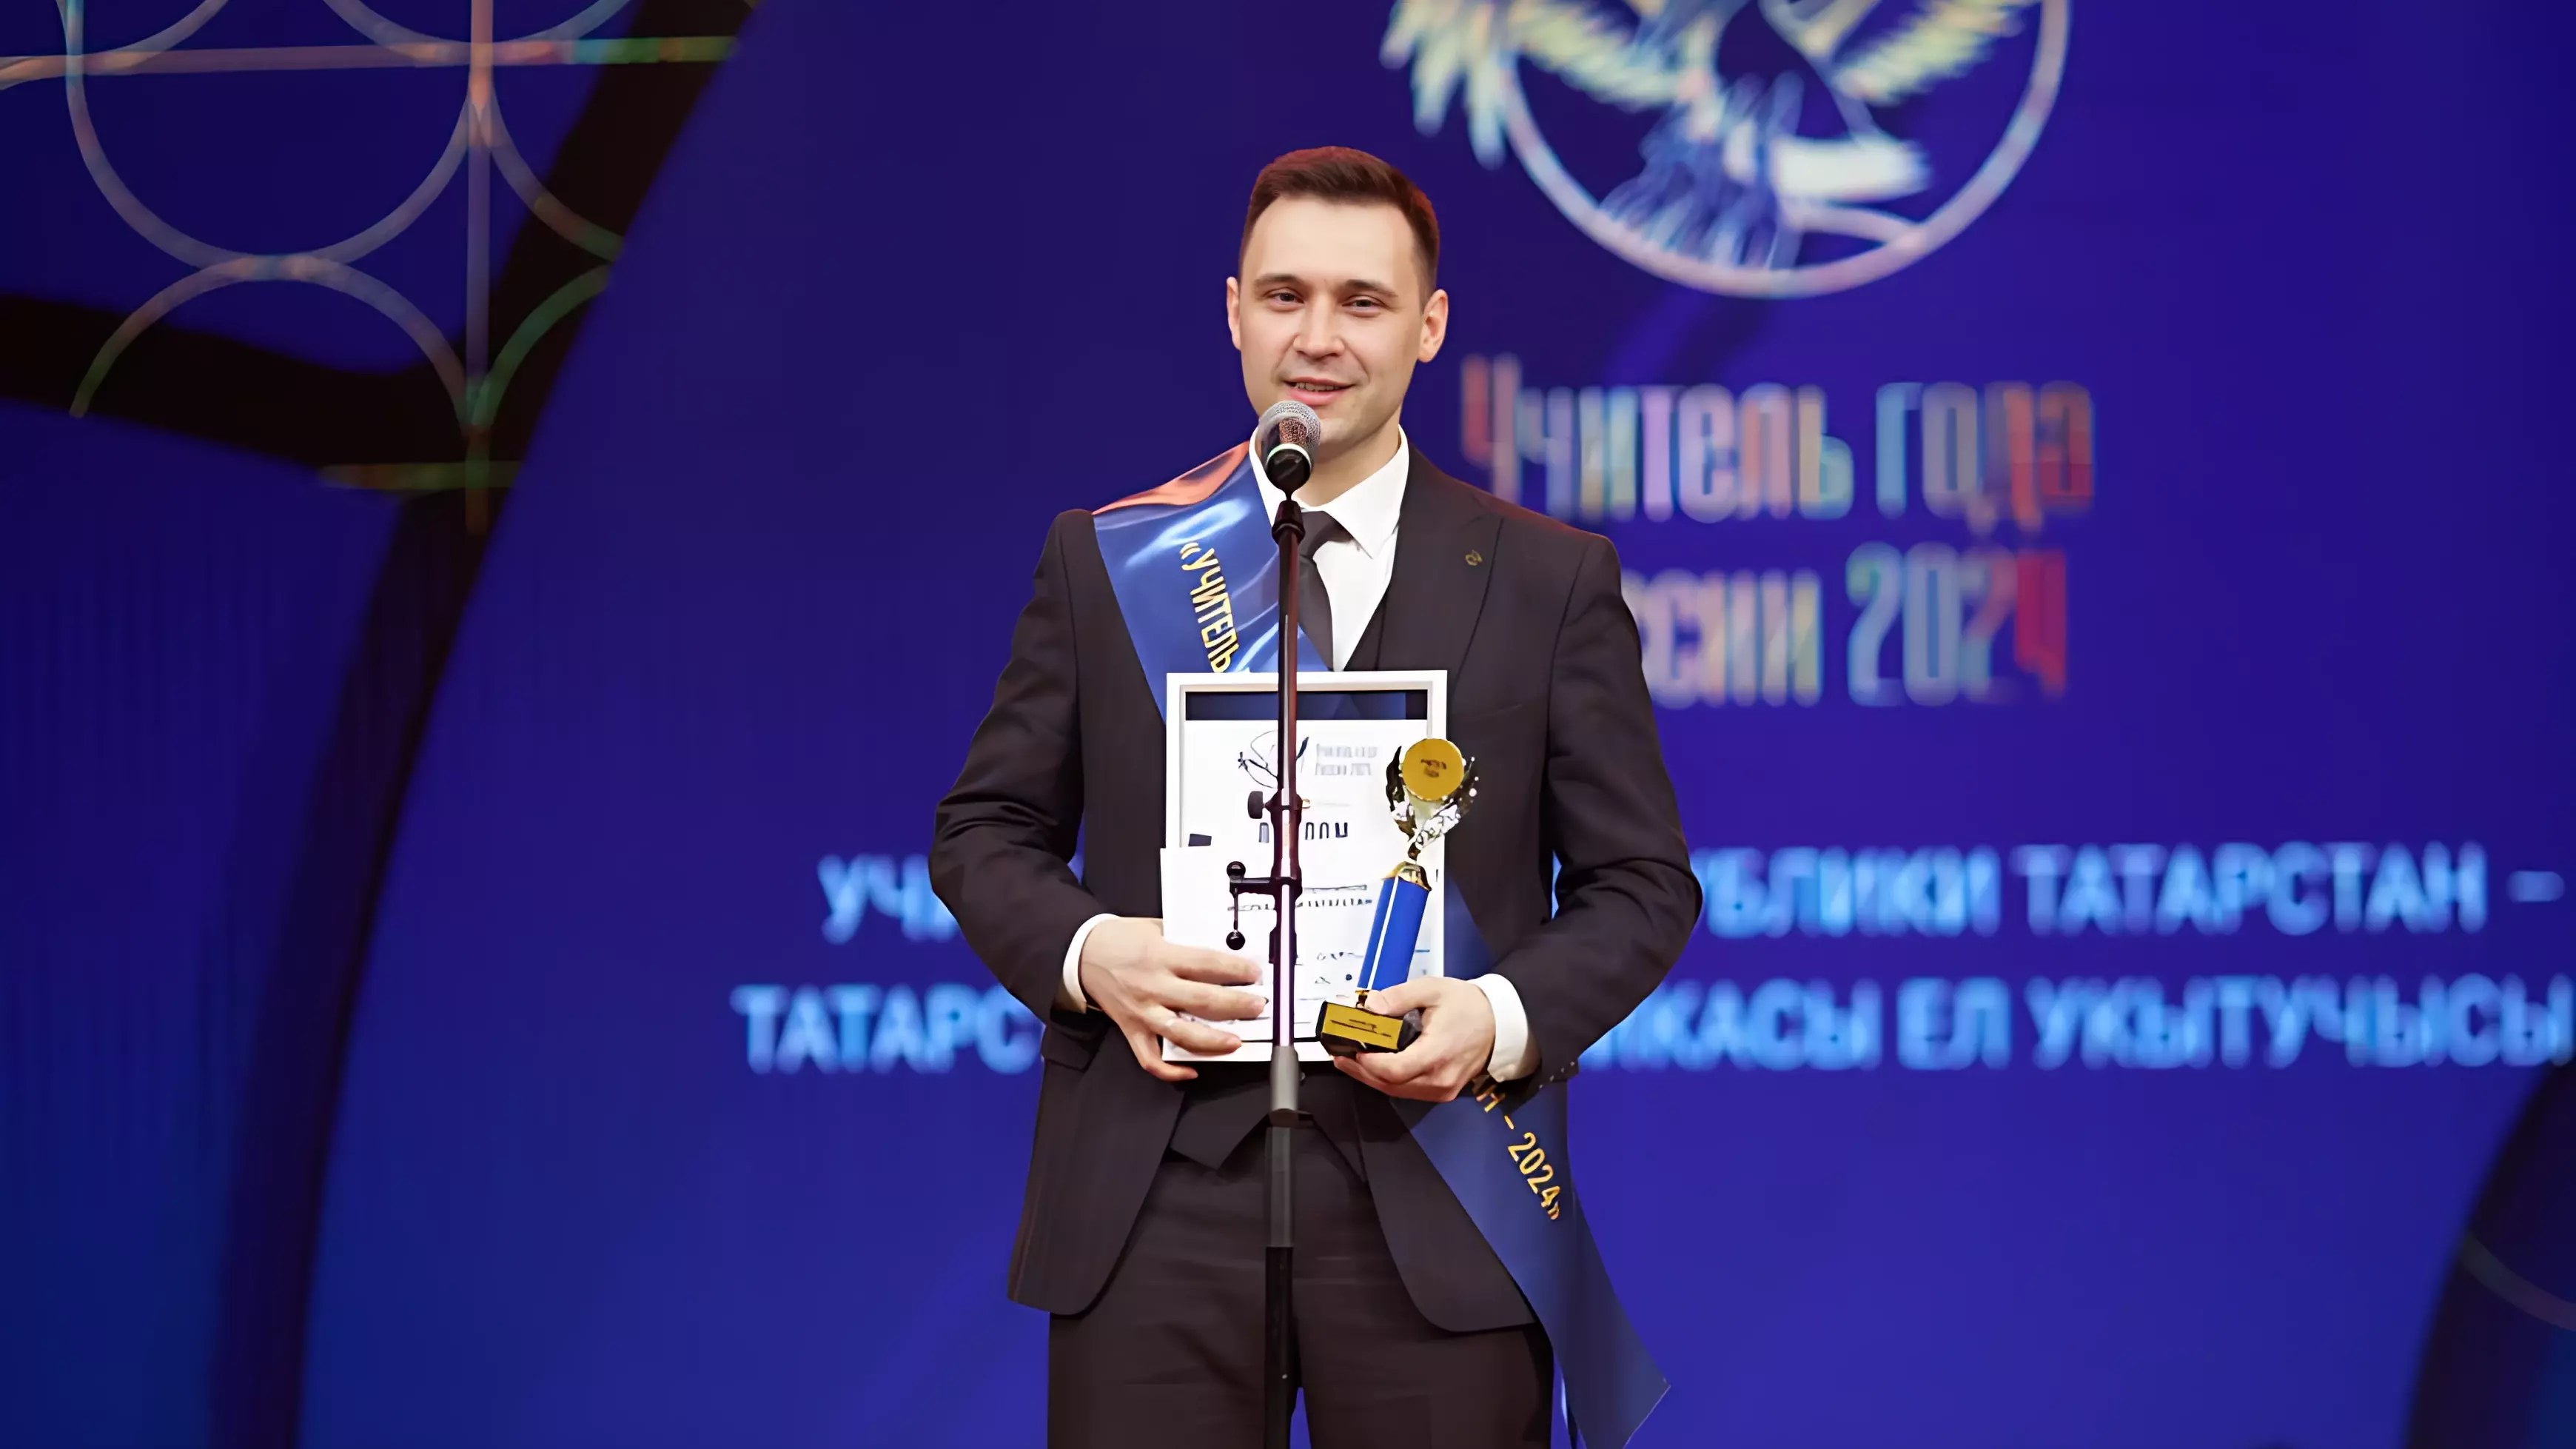 Хабиров стал «Учителем года» в Татарстане